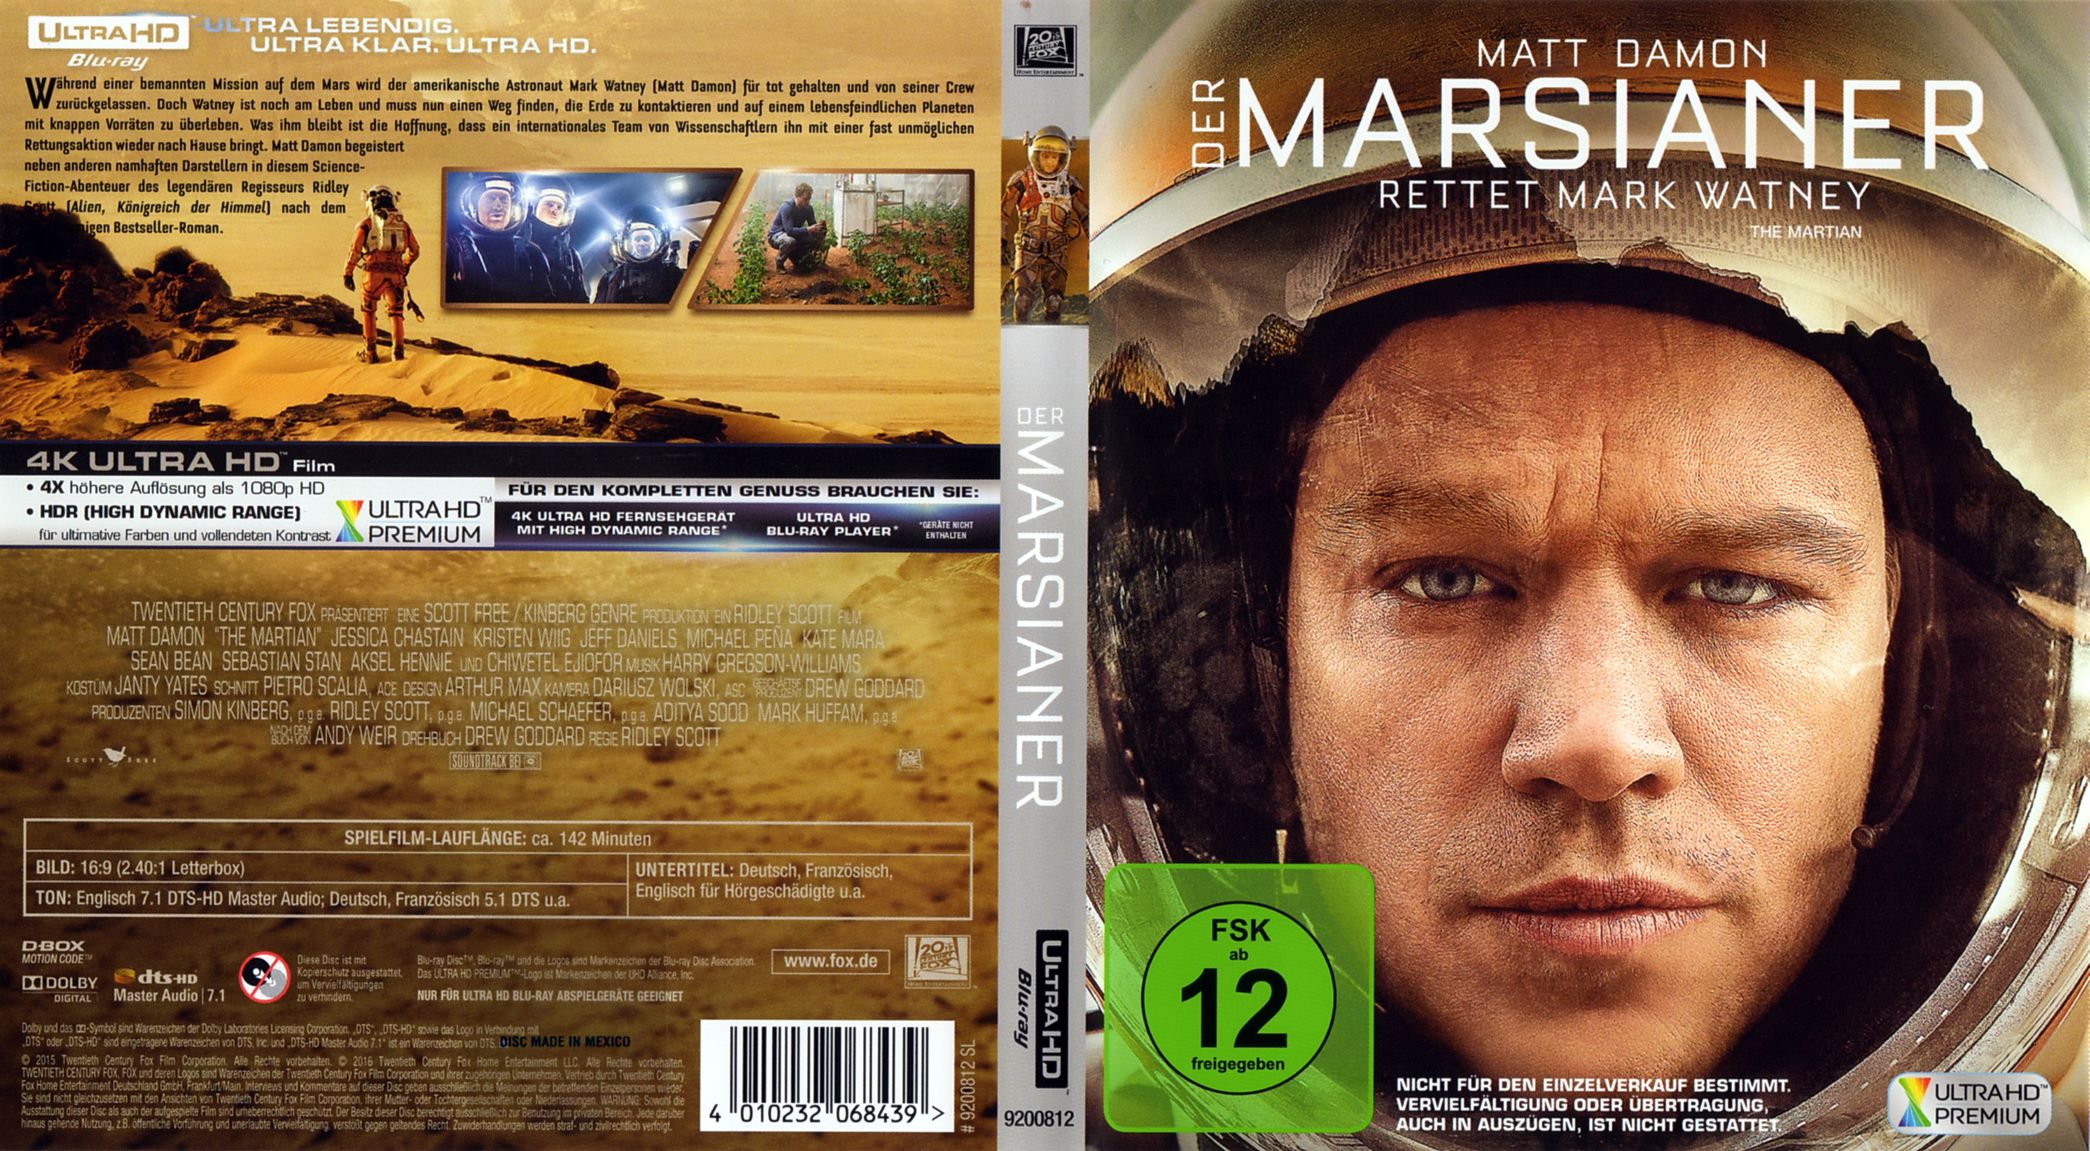 Der Marsianer 4K Ultra HD Cover